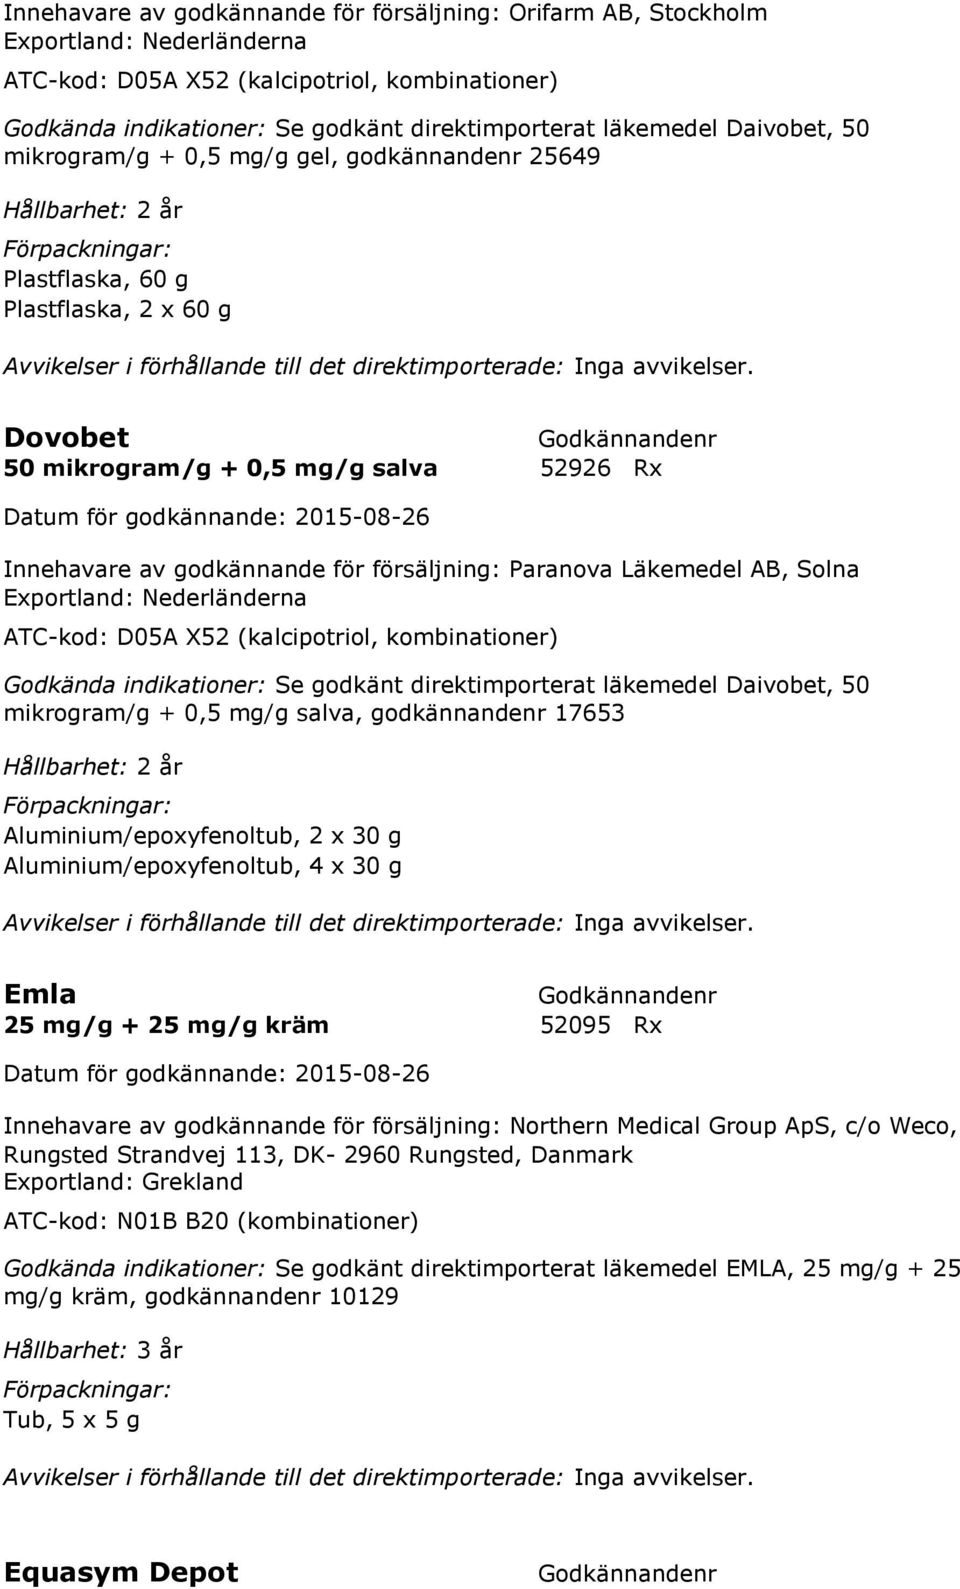 Paranova Läkemedel AB, Solna Exportland: Nederländerna ATC-kod: D05A X52 (kalcipotriol, kombinationer) Godkända indikationer: Se godkänt direktimporterat läkemedel Daivobet, 50 mikrogram/g + 0,5 mg/g